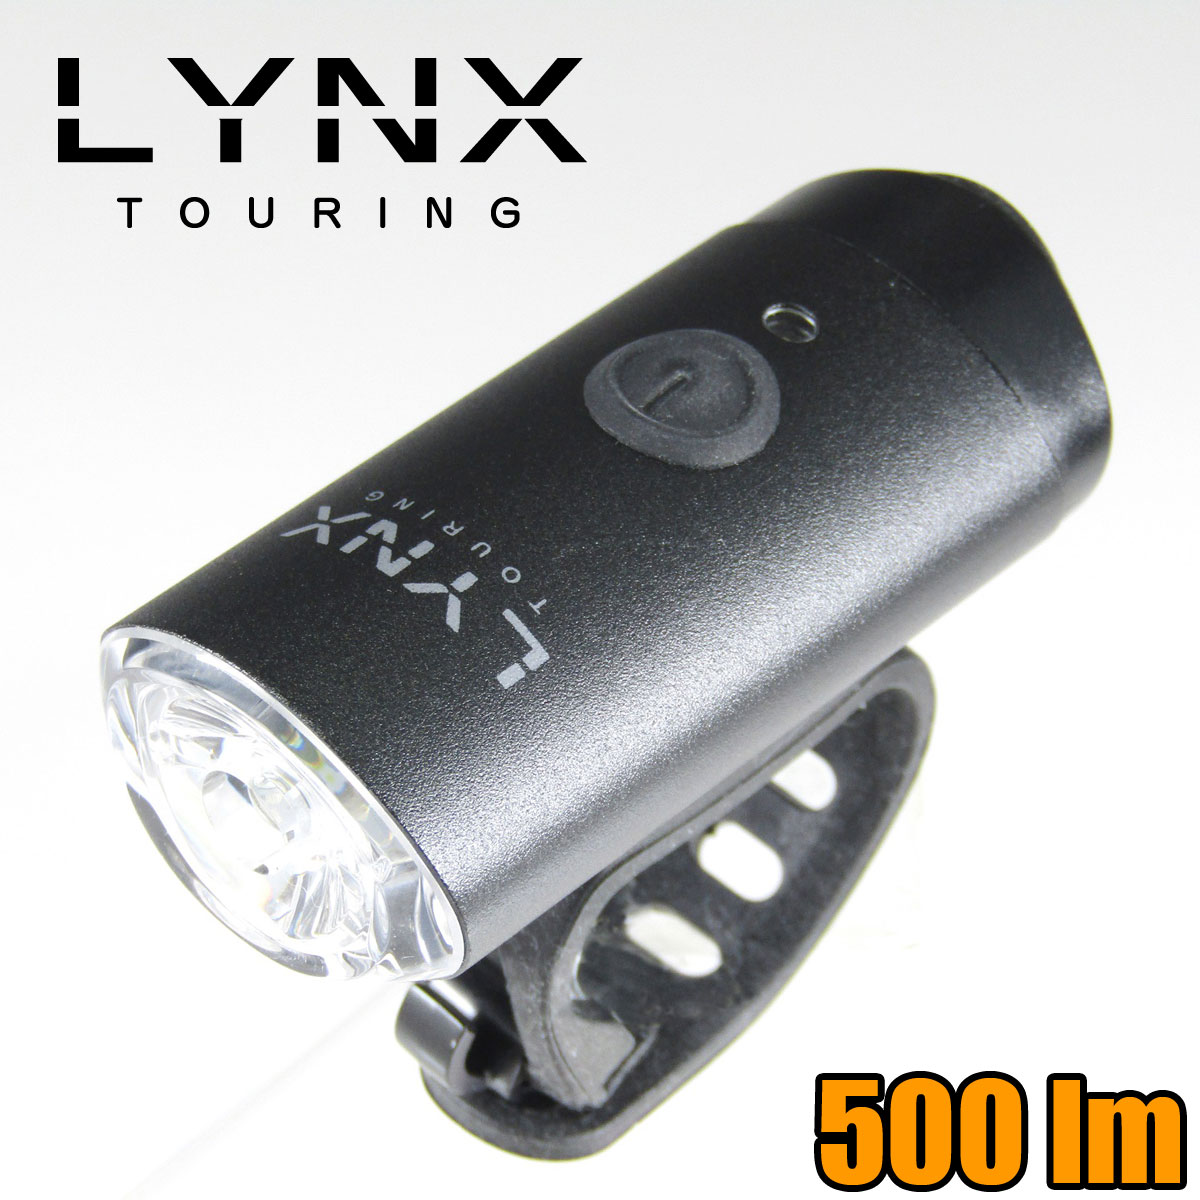 ] Cg LYNX [d 10W nCp[ LED wbhCg LX-128P MAX650[  Lv h [d USB ^CvB hH ]  h Mtg y{Biꕔn揜jz